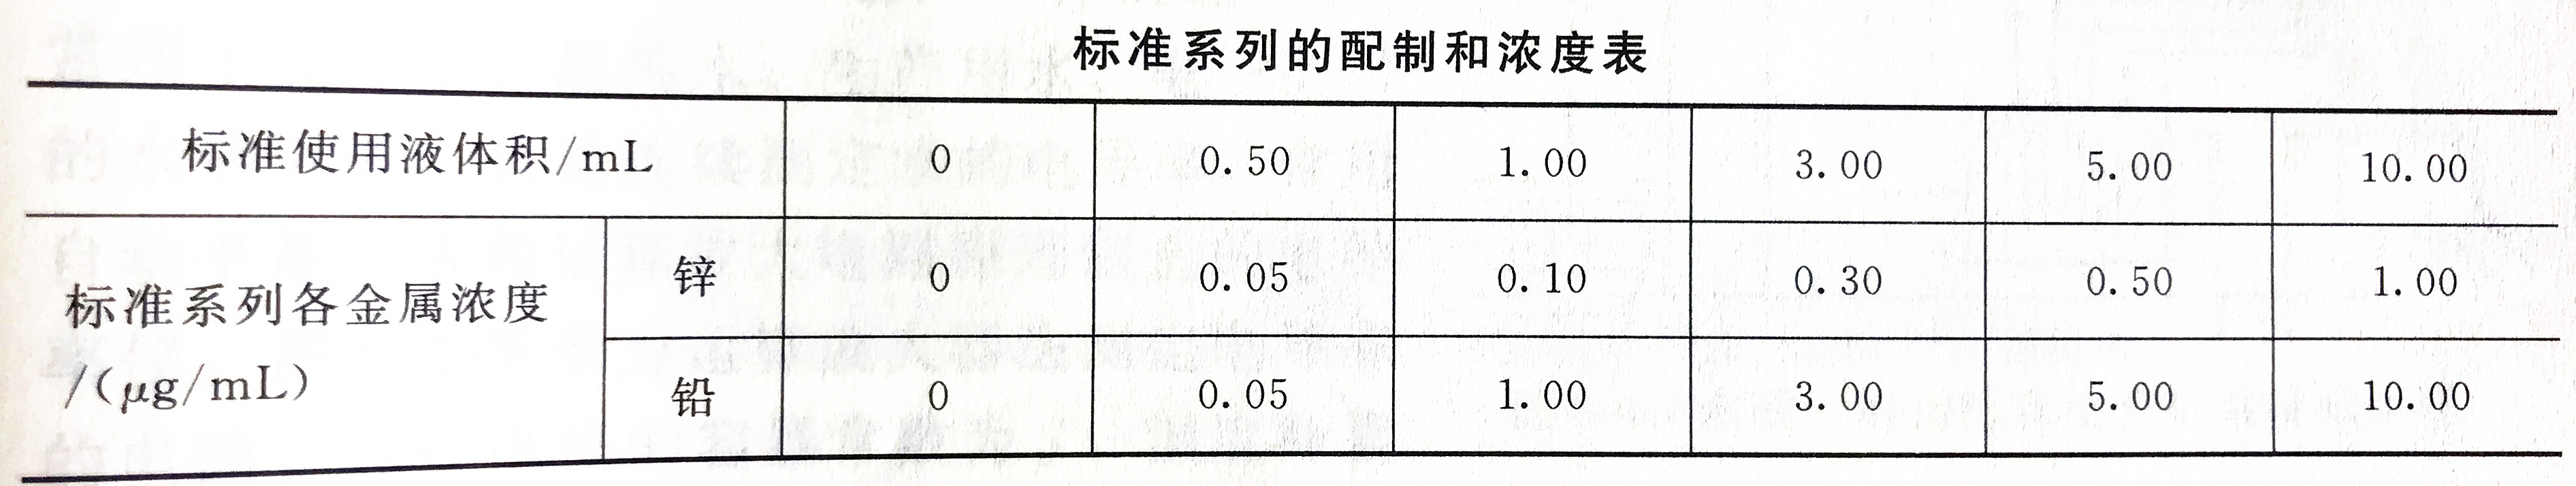 锌铅标准溶液浓度配置表